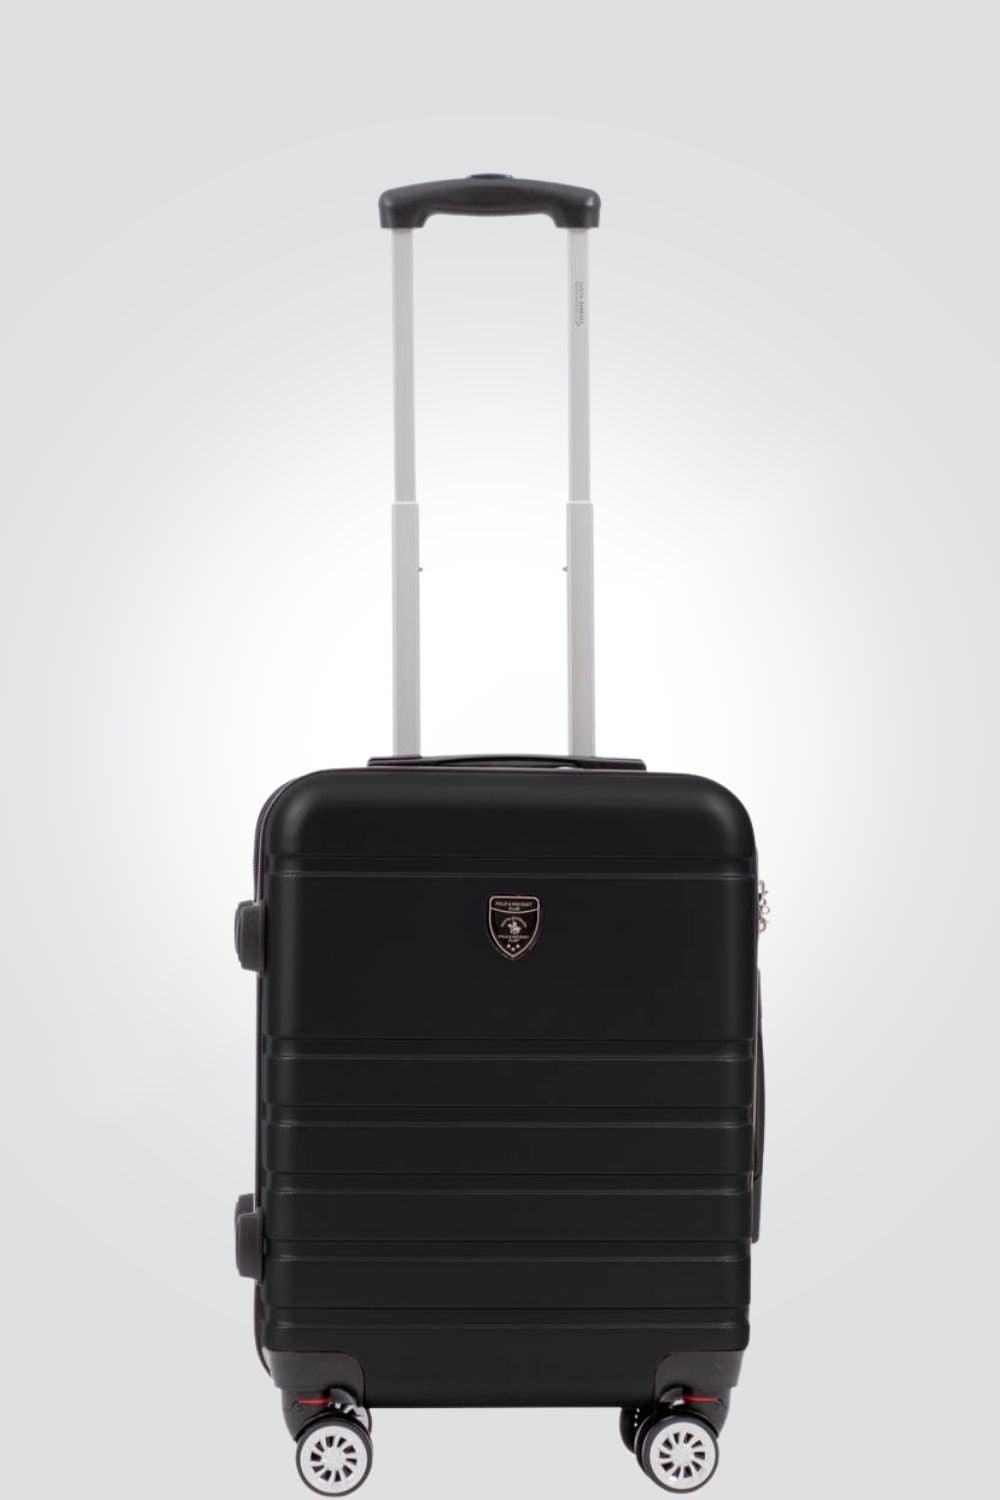 מזוודה טרולי עלייה למטוס 20" דגם 1807 בצבע שחור - MASHBIR//365